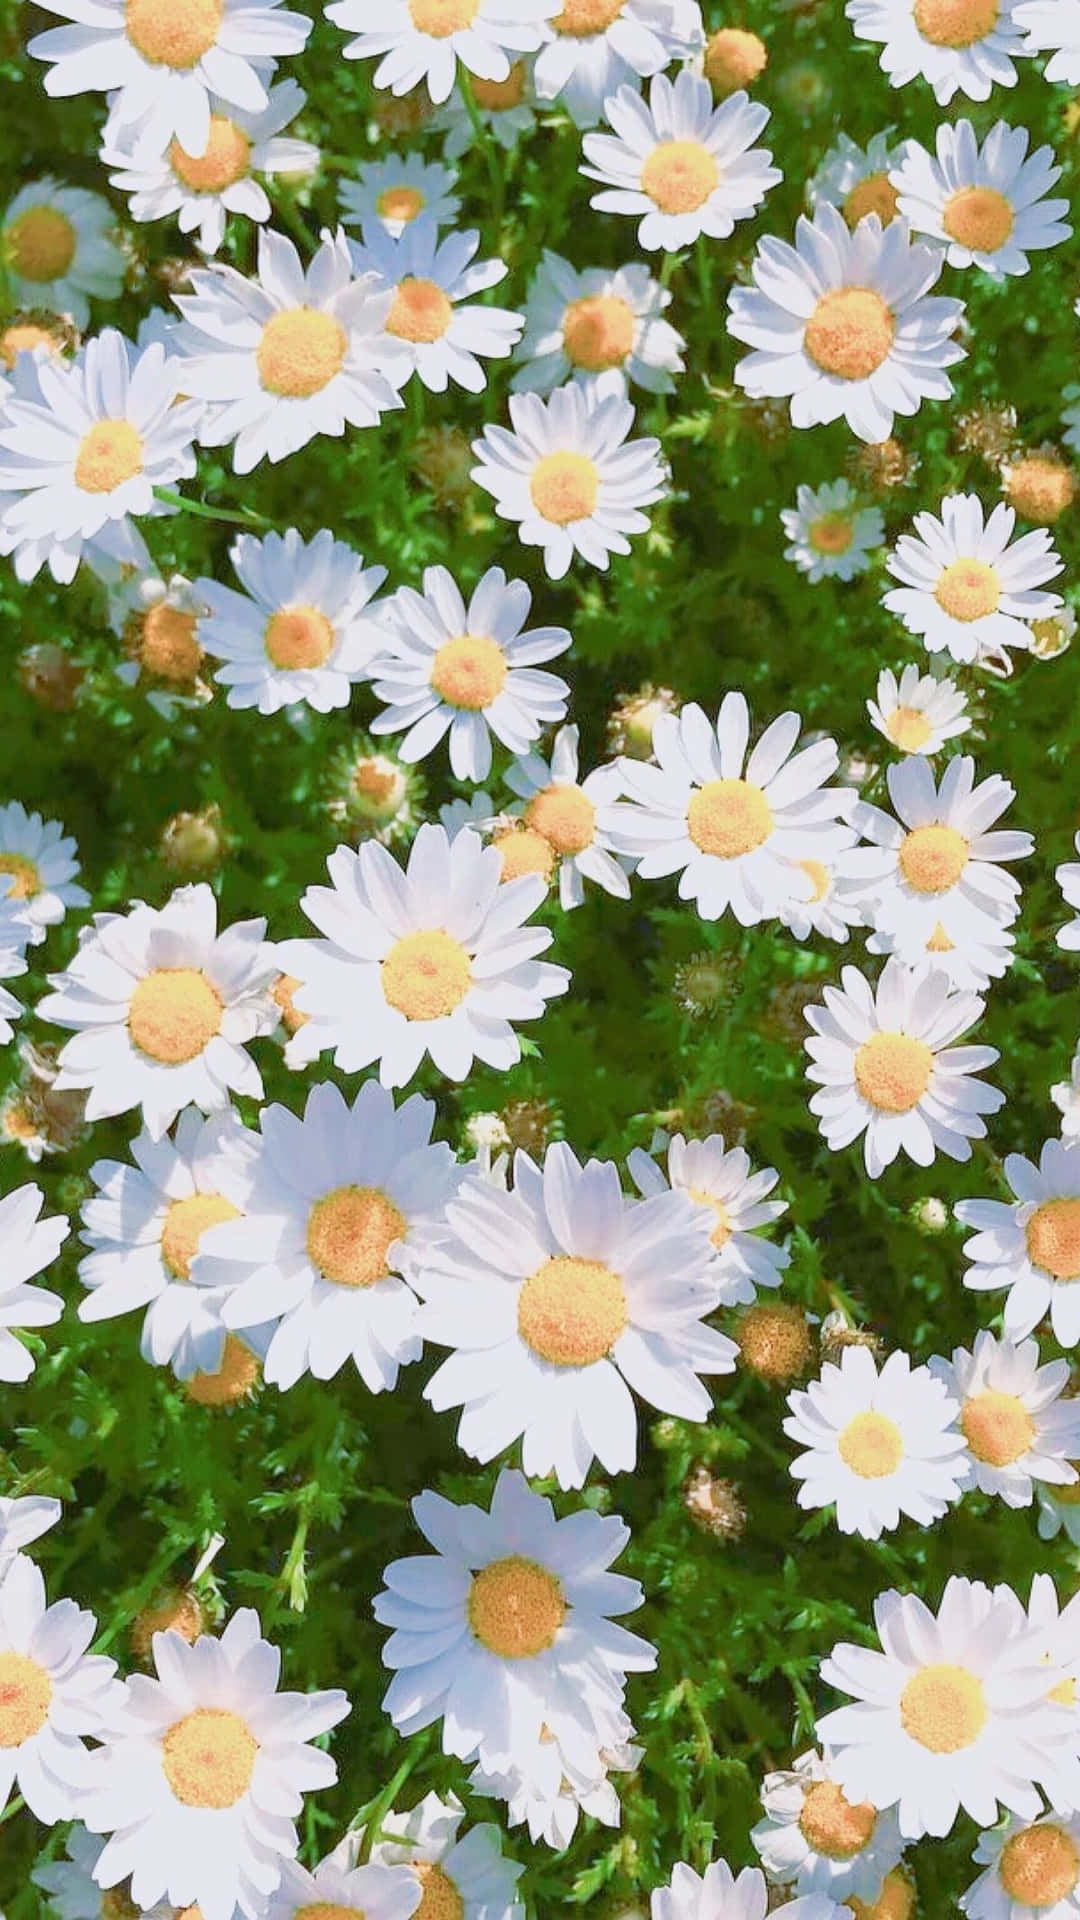 Blumenbettaus Weißen Frühjahrs-gänseblümchen Für Das Iphone Wallpaper